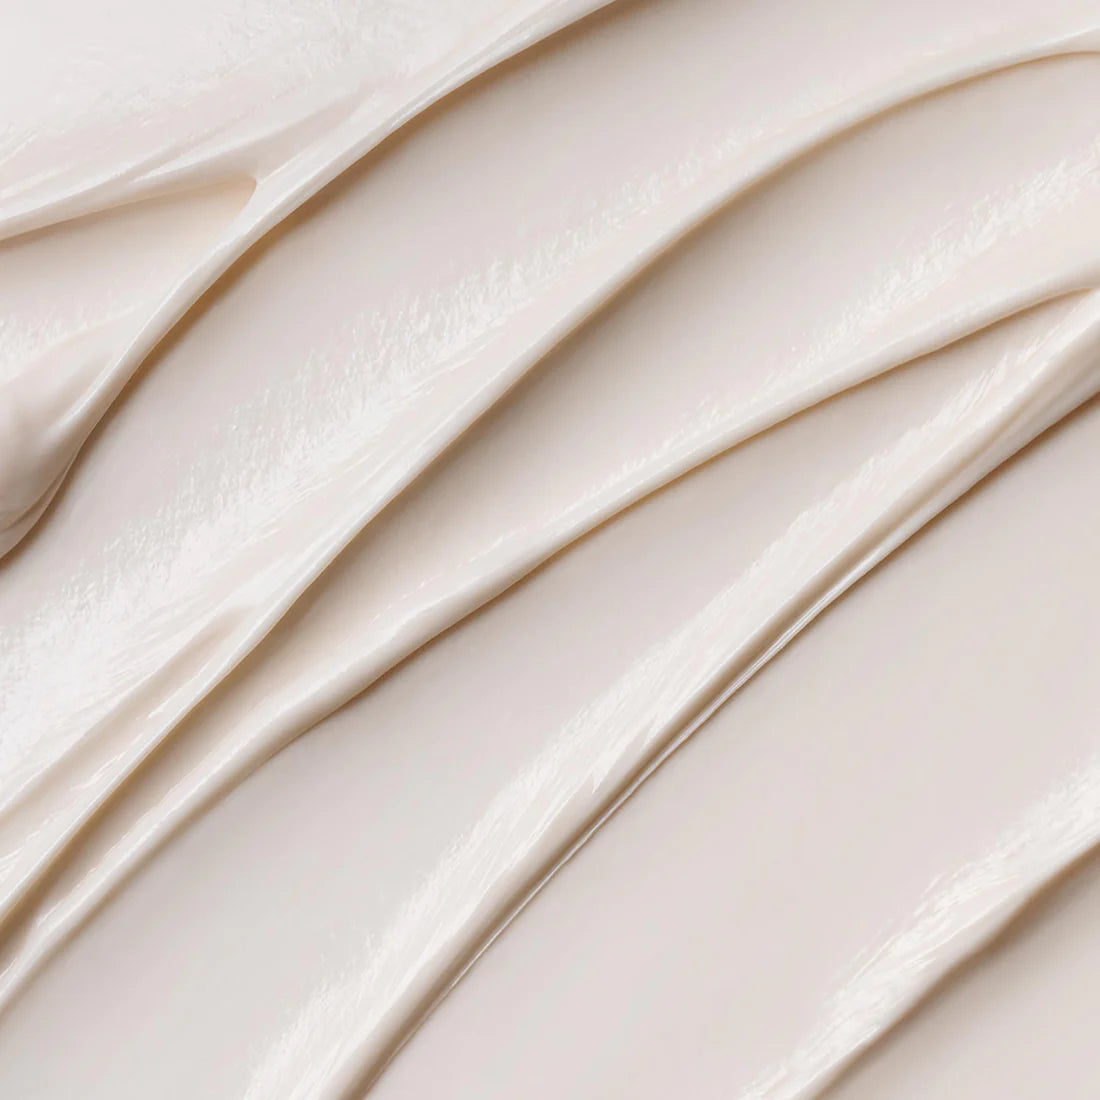 Ultracalming - Stabilizing Repair Cream